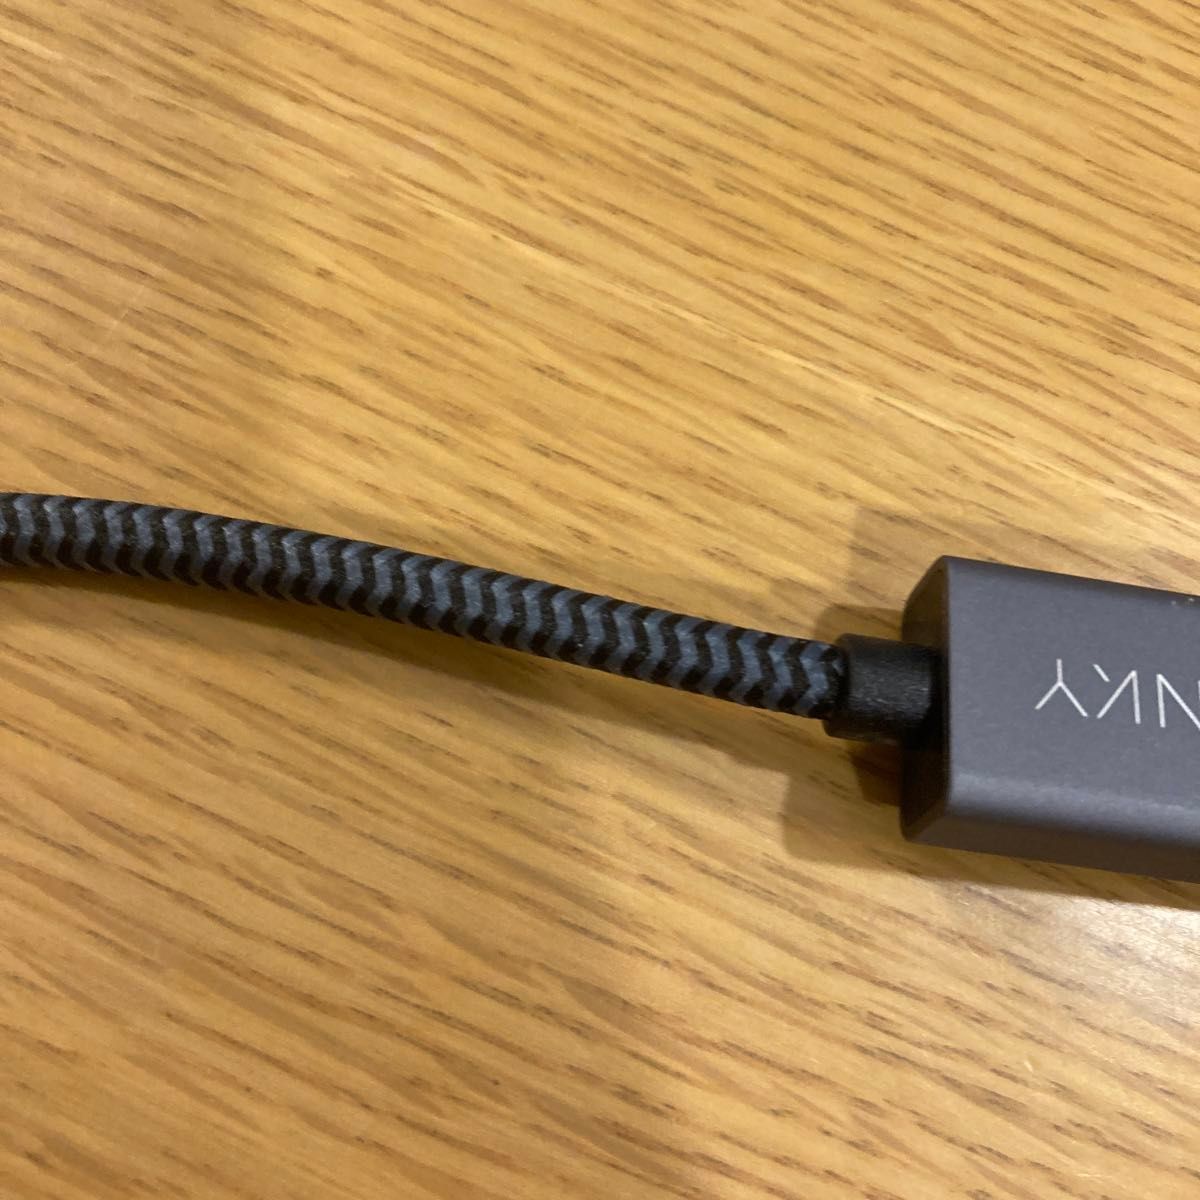 ミニディスプレイポート 変換アダプタセット HDMI Microsoft Surfaceサーフェイス用 マイクロSDカードリーダー